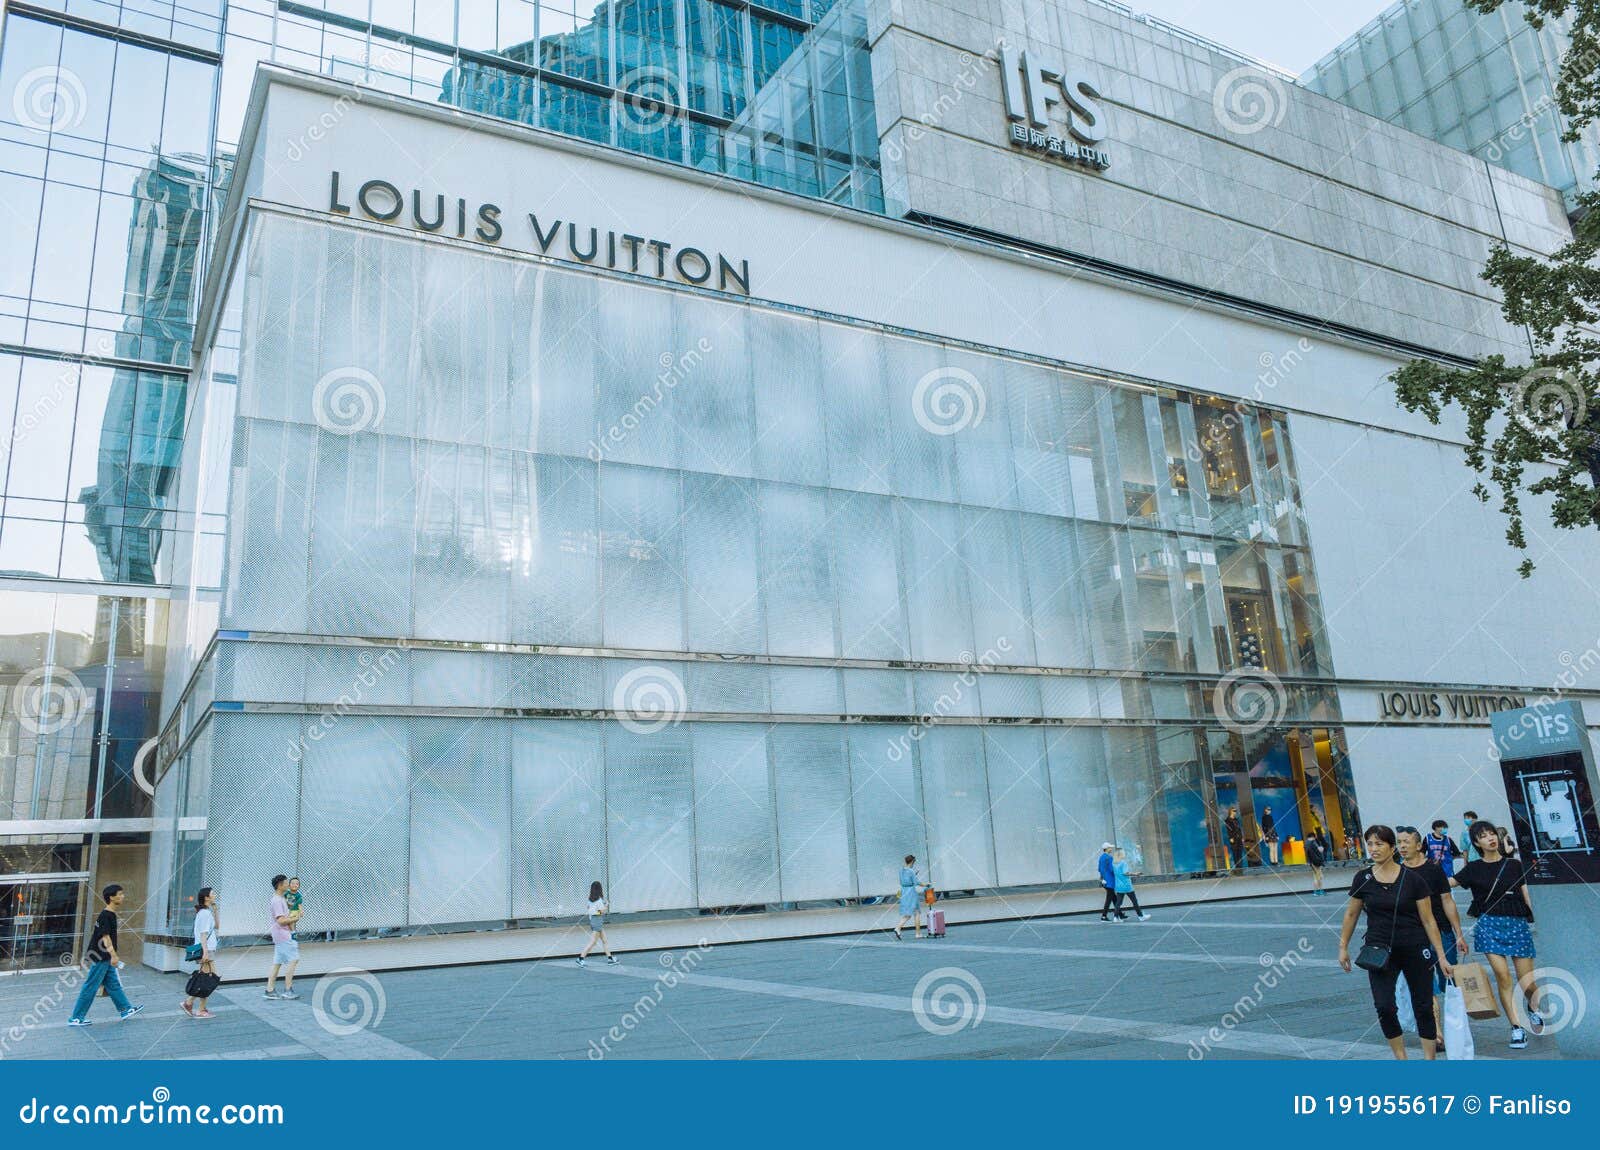 Louis Vuitton Chengdu IFS store, China